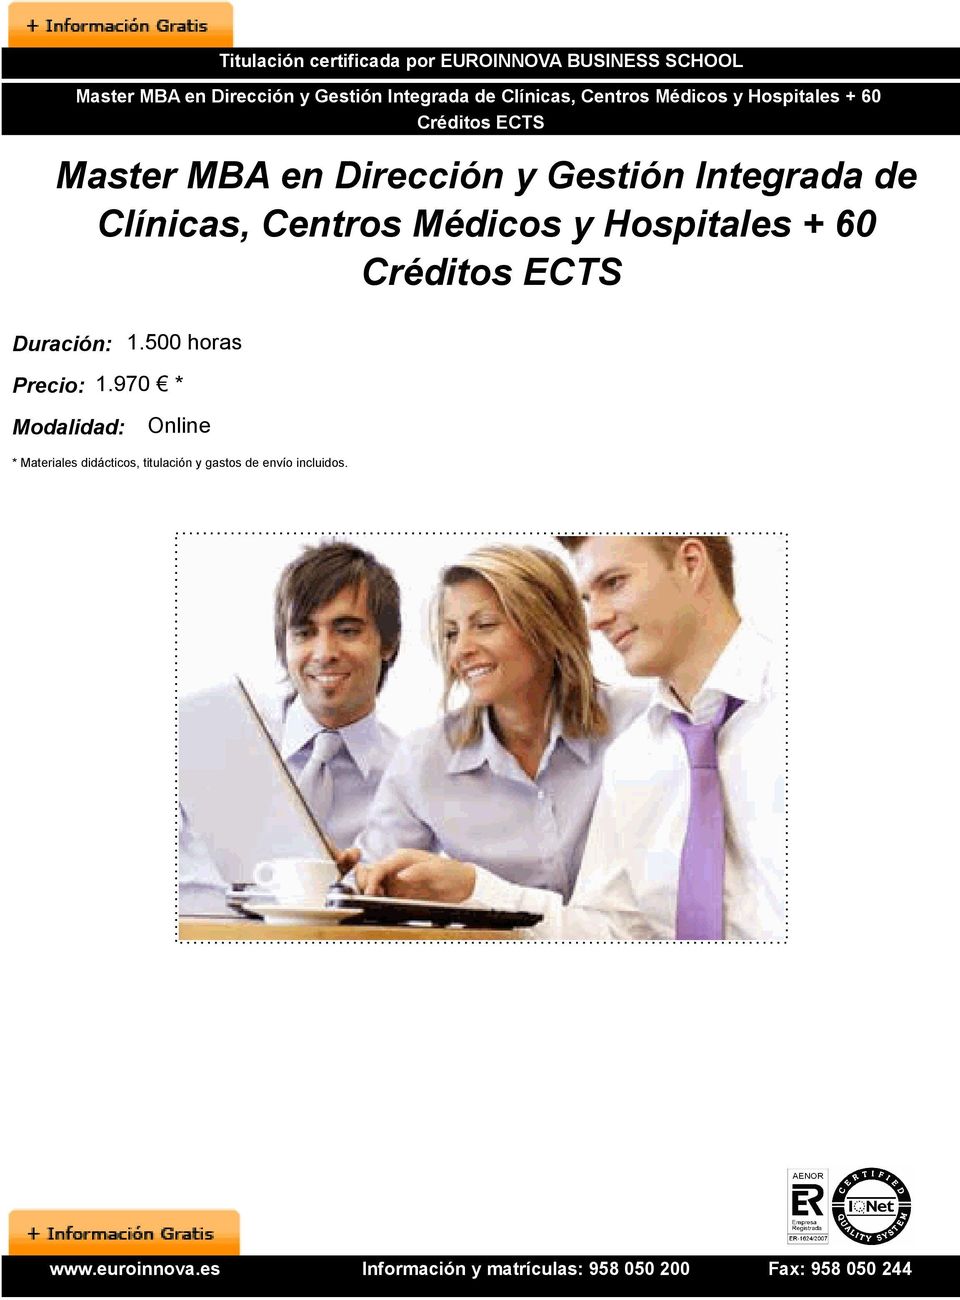 Gestión Integrada de Clínicas, Centros Médicos y Hospitales + 60 Duración: 1.